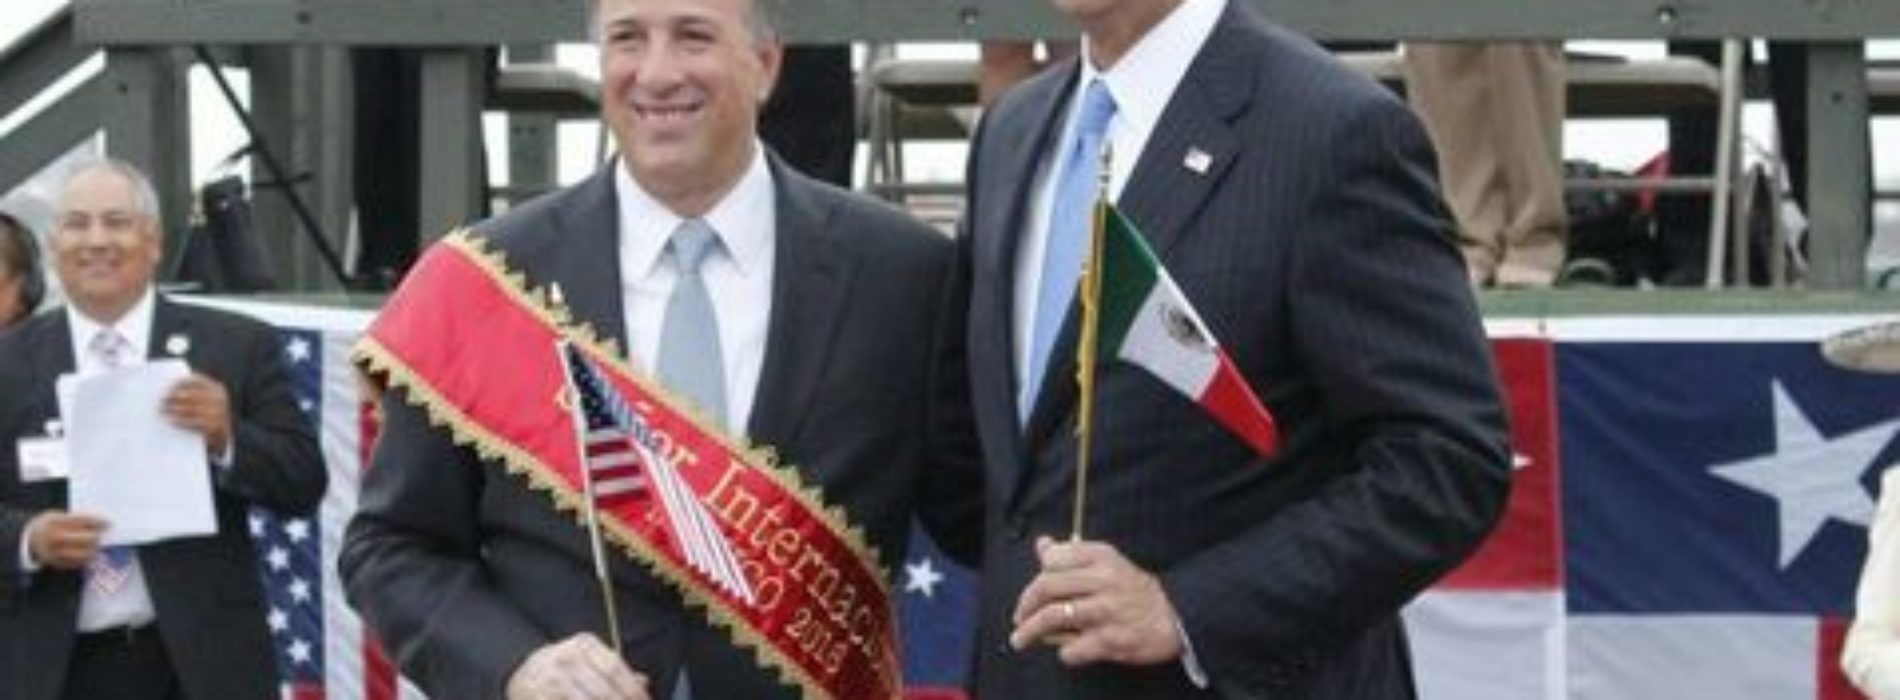 Hay pocos amigos como México, dice Meade a Trump